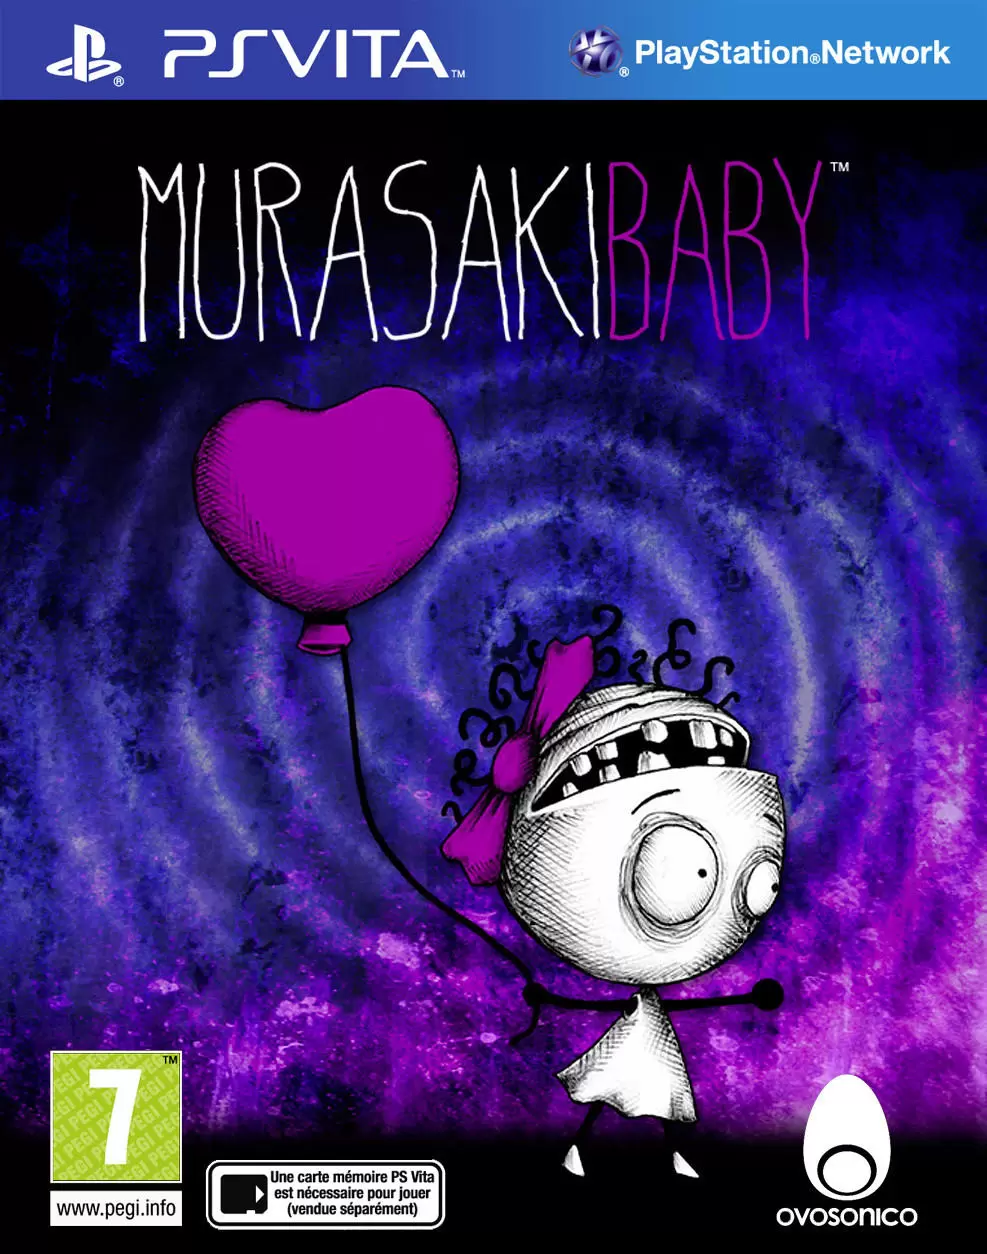 PS Vita Games - Murasaki Baby